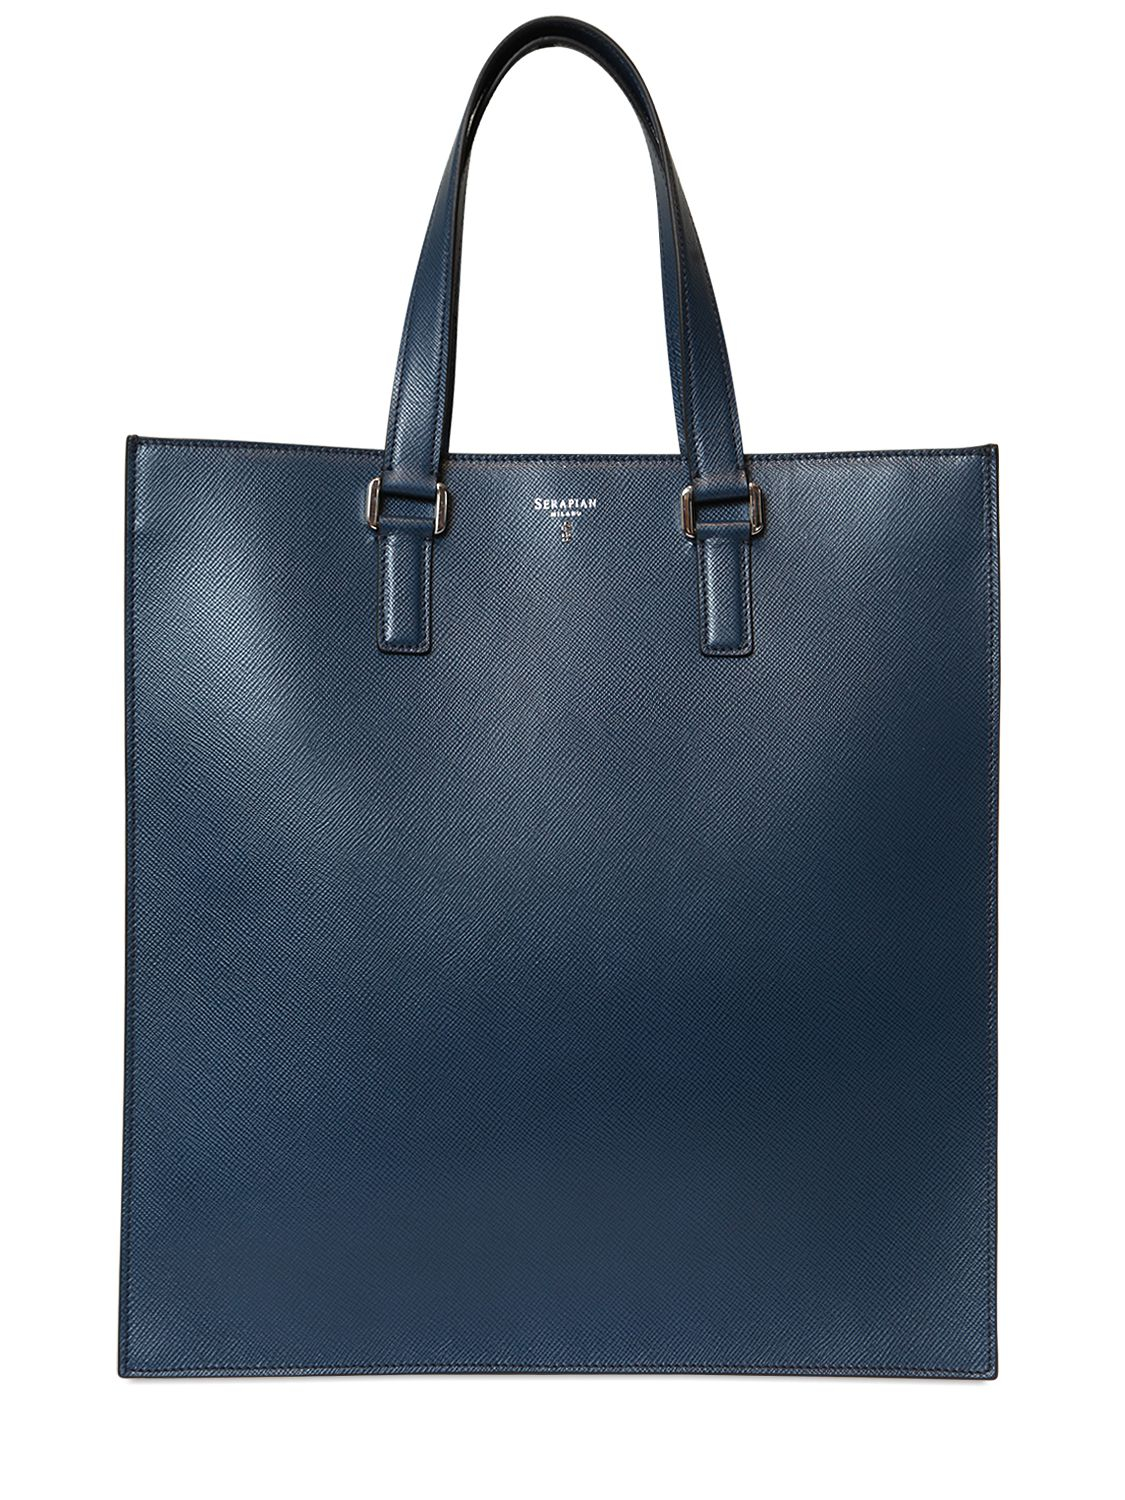 Serapian Evolution Saffiano Leather Tote Bag in Blue - Lyst